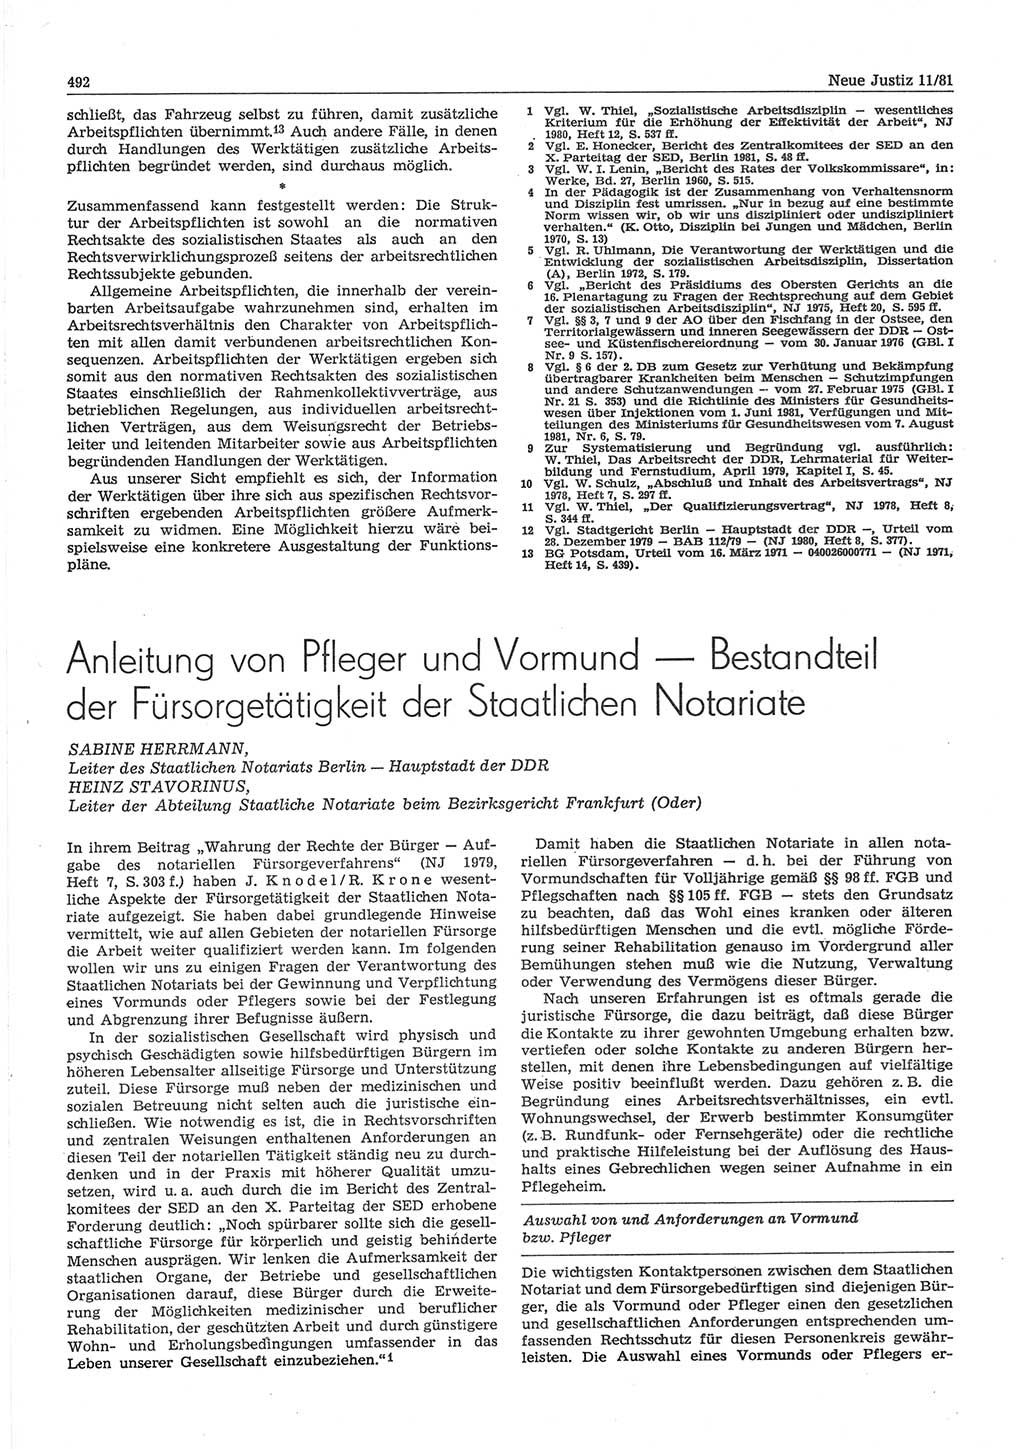 Neue Justiz (NJ), Zeitschrift für sozialistisches Recht und Gesetzlichkeit [Deutsche Demokratische Republik (DDR)], 35. Jahrgang 1981, Seite 492 (NJ DDR 1981, S. 492)